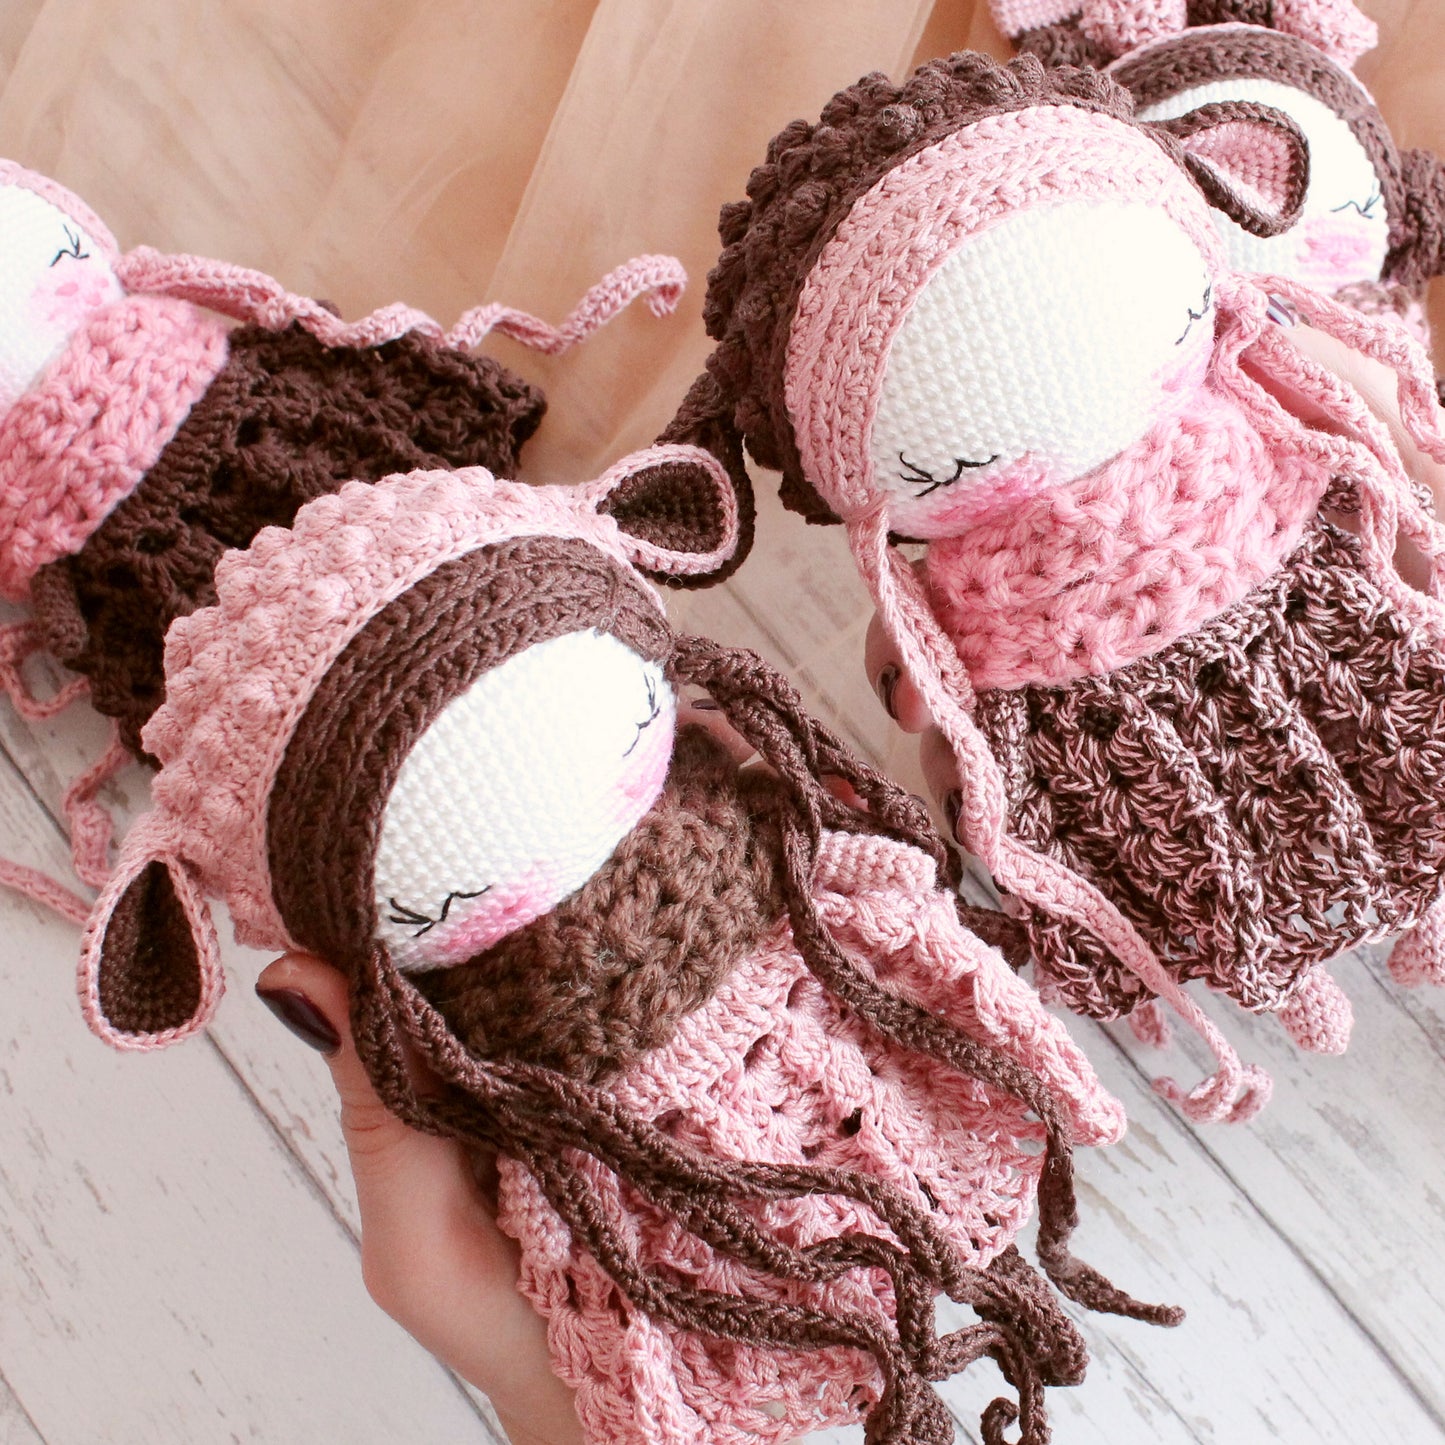 Crochet amigurumi doll sheep